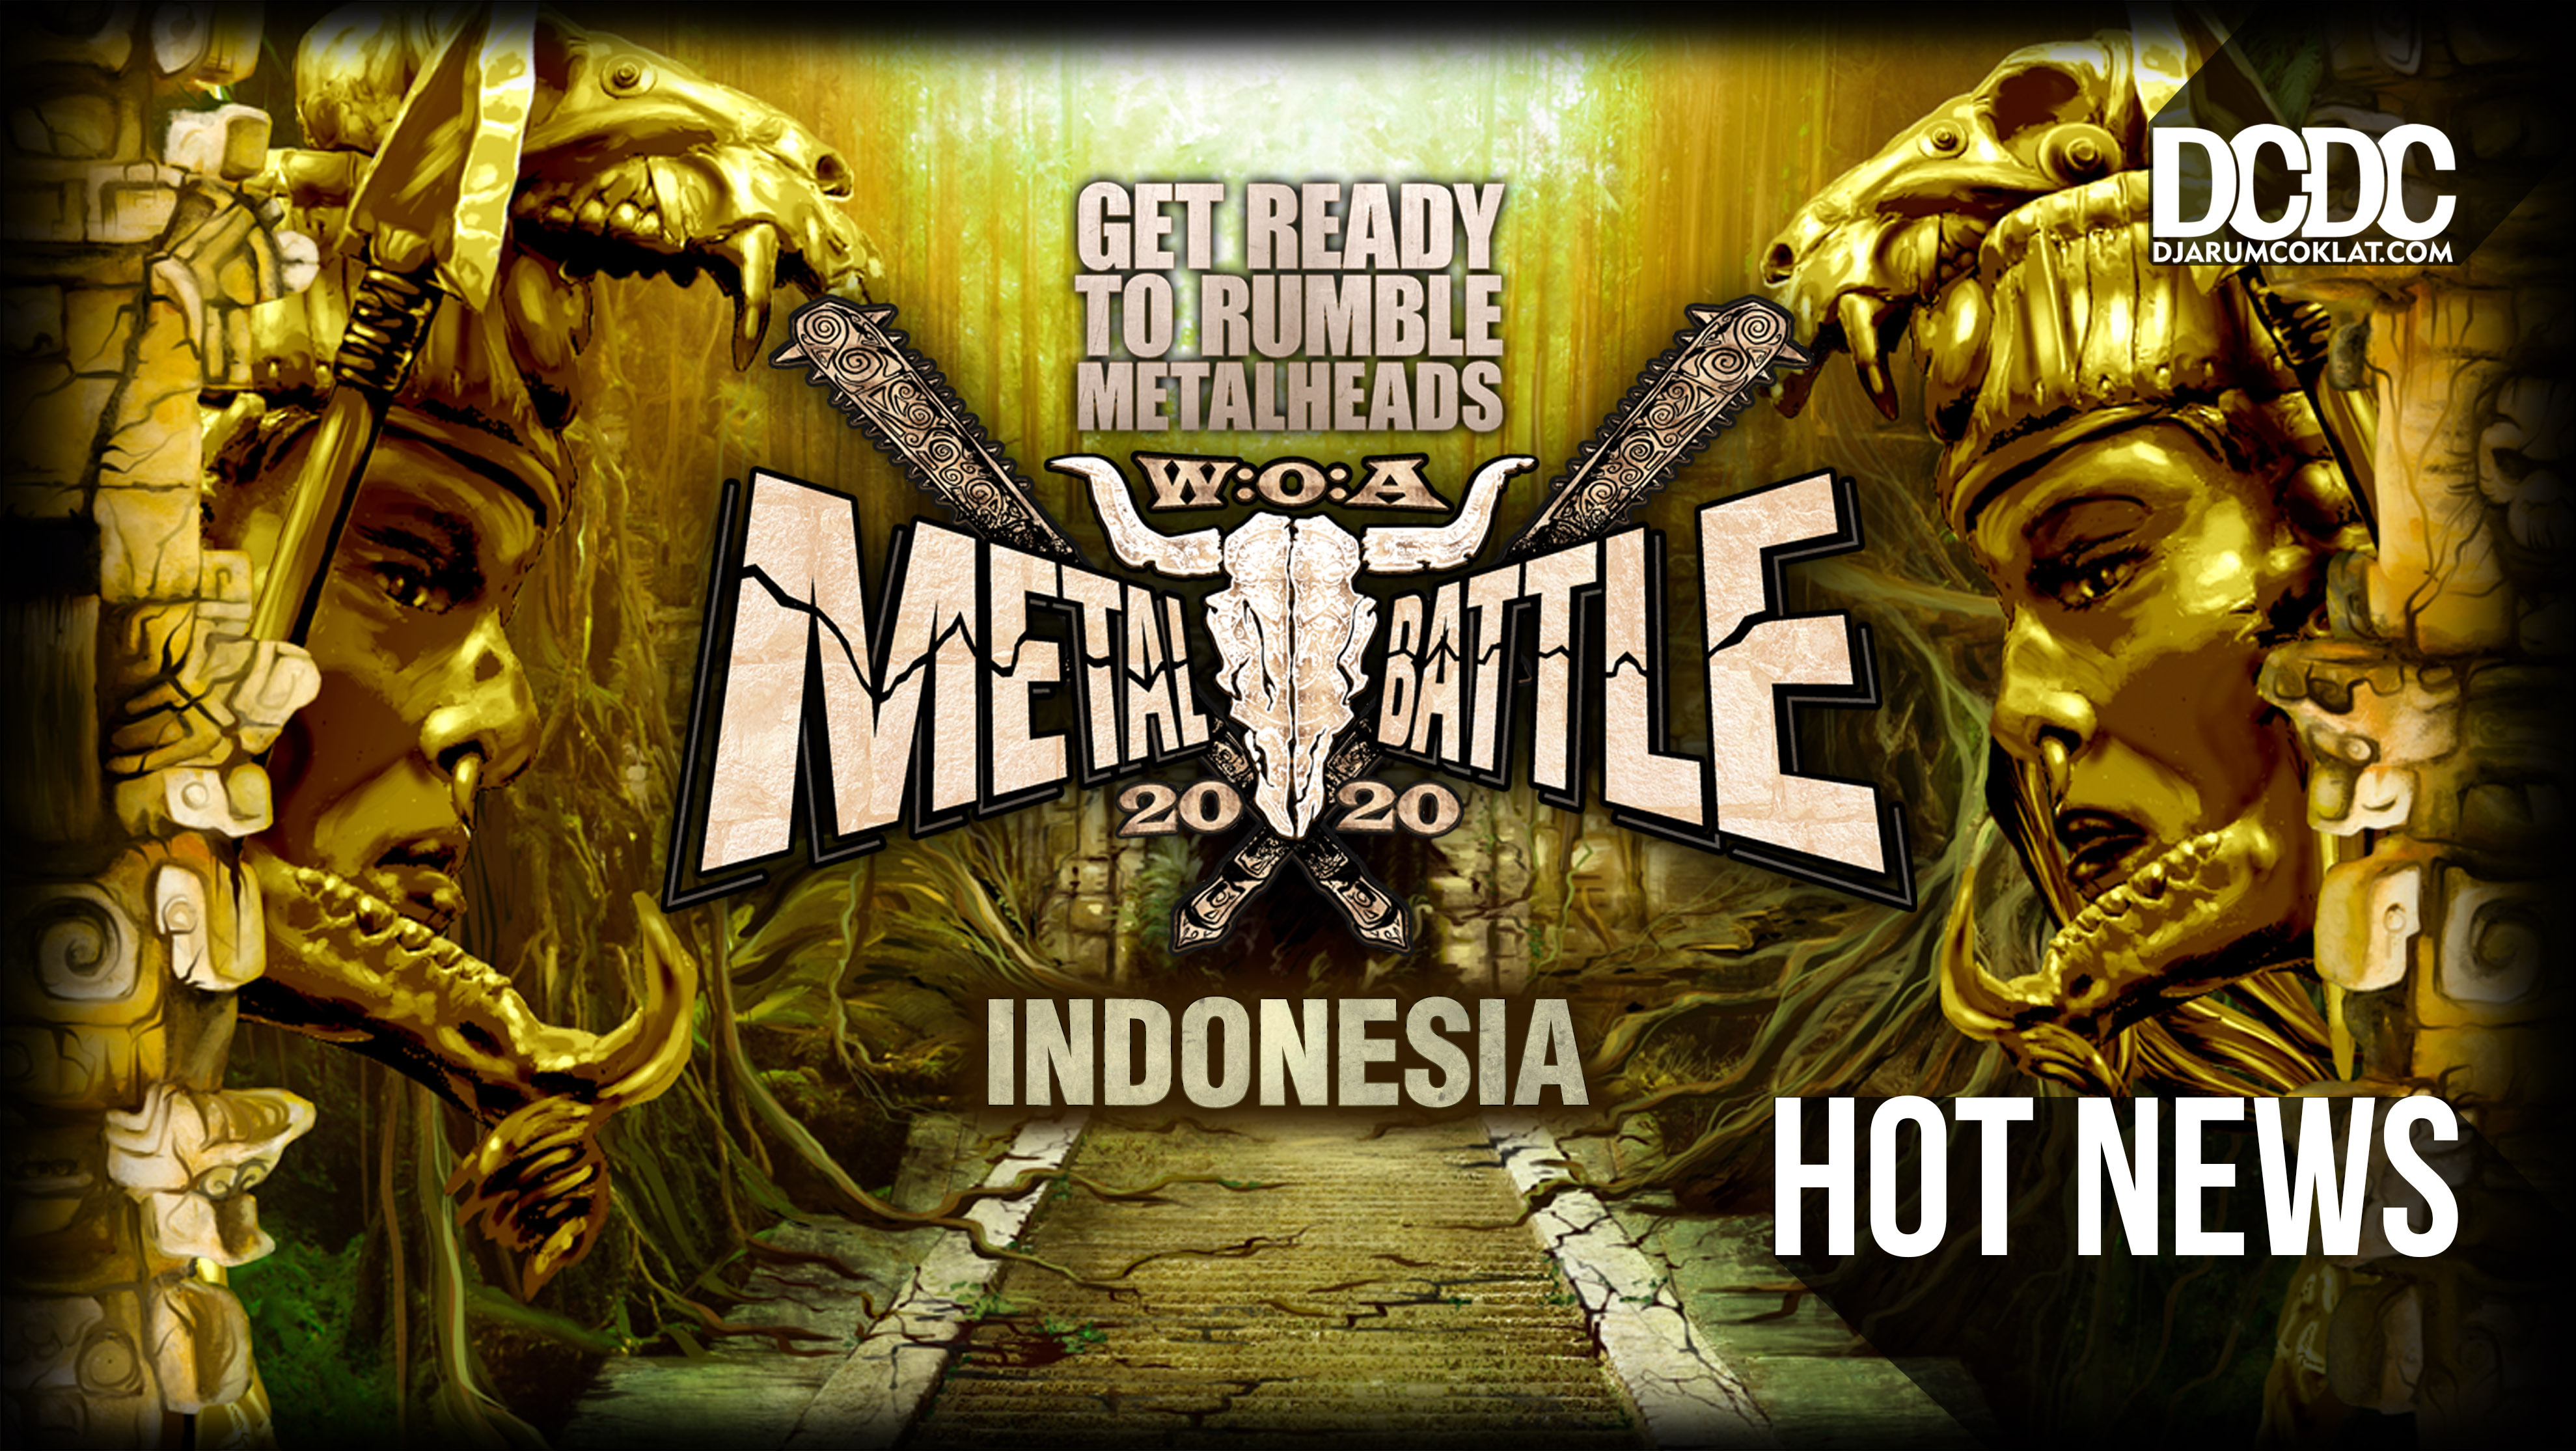 Untuk Semua Band Musik Ekstrem, Registrasi W:O:A Metal Battle Indonesia 2020 Sudah Dibuka